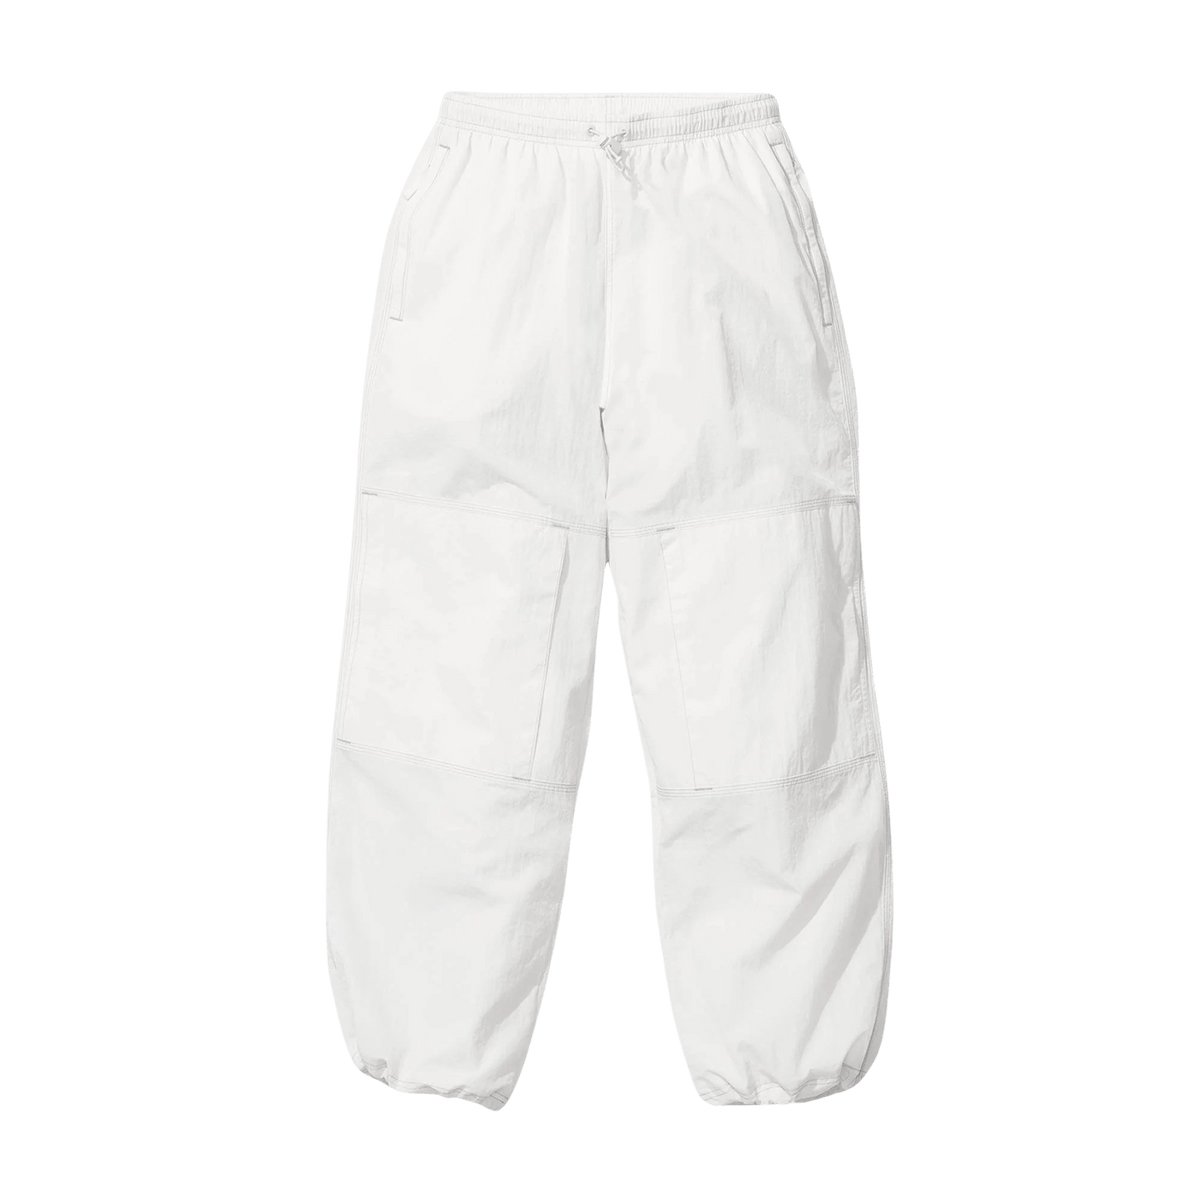 Supreme x Nike Track Pants 'White' - JuzsportsShops